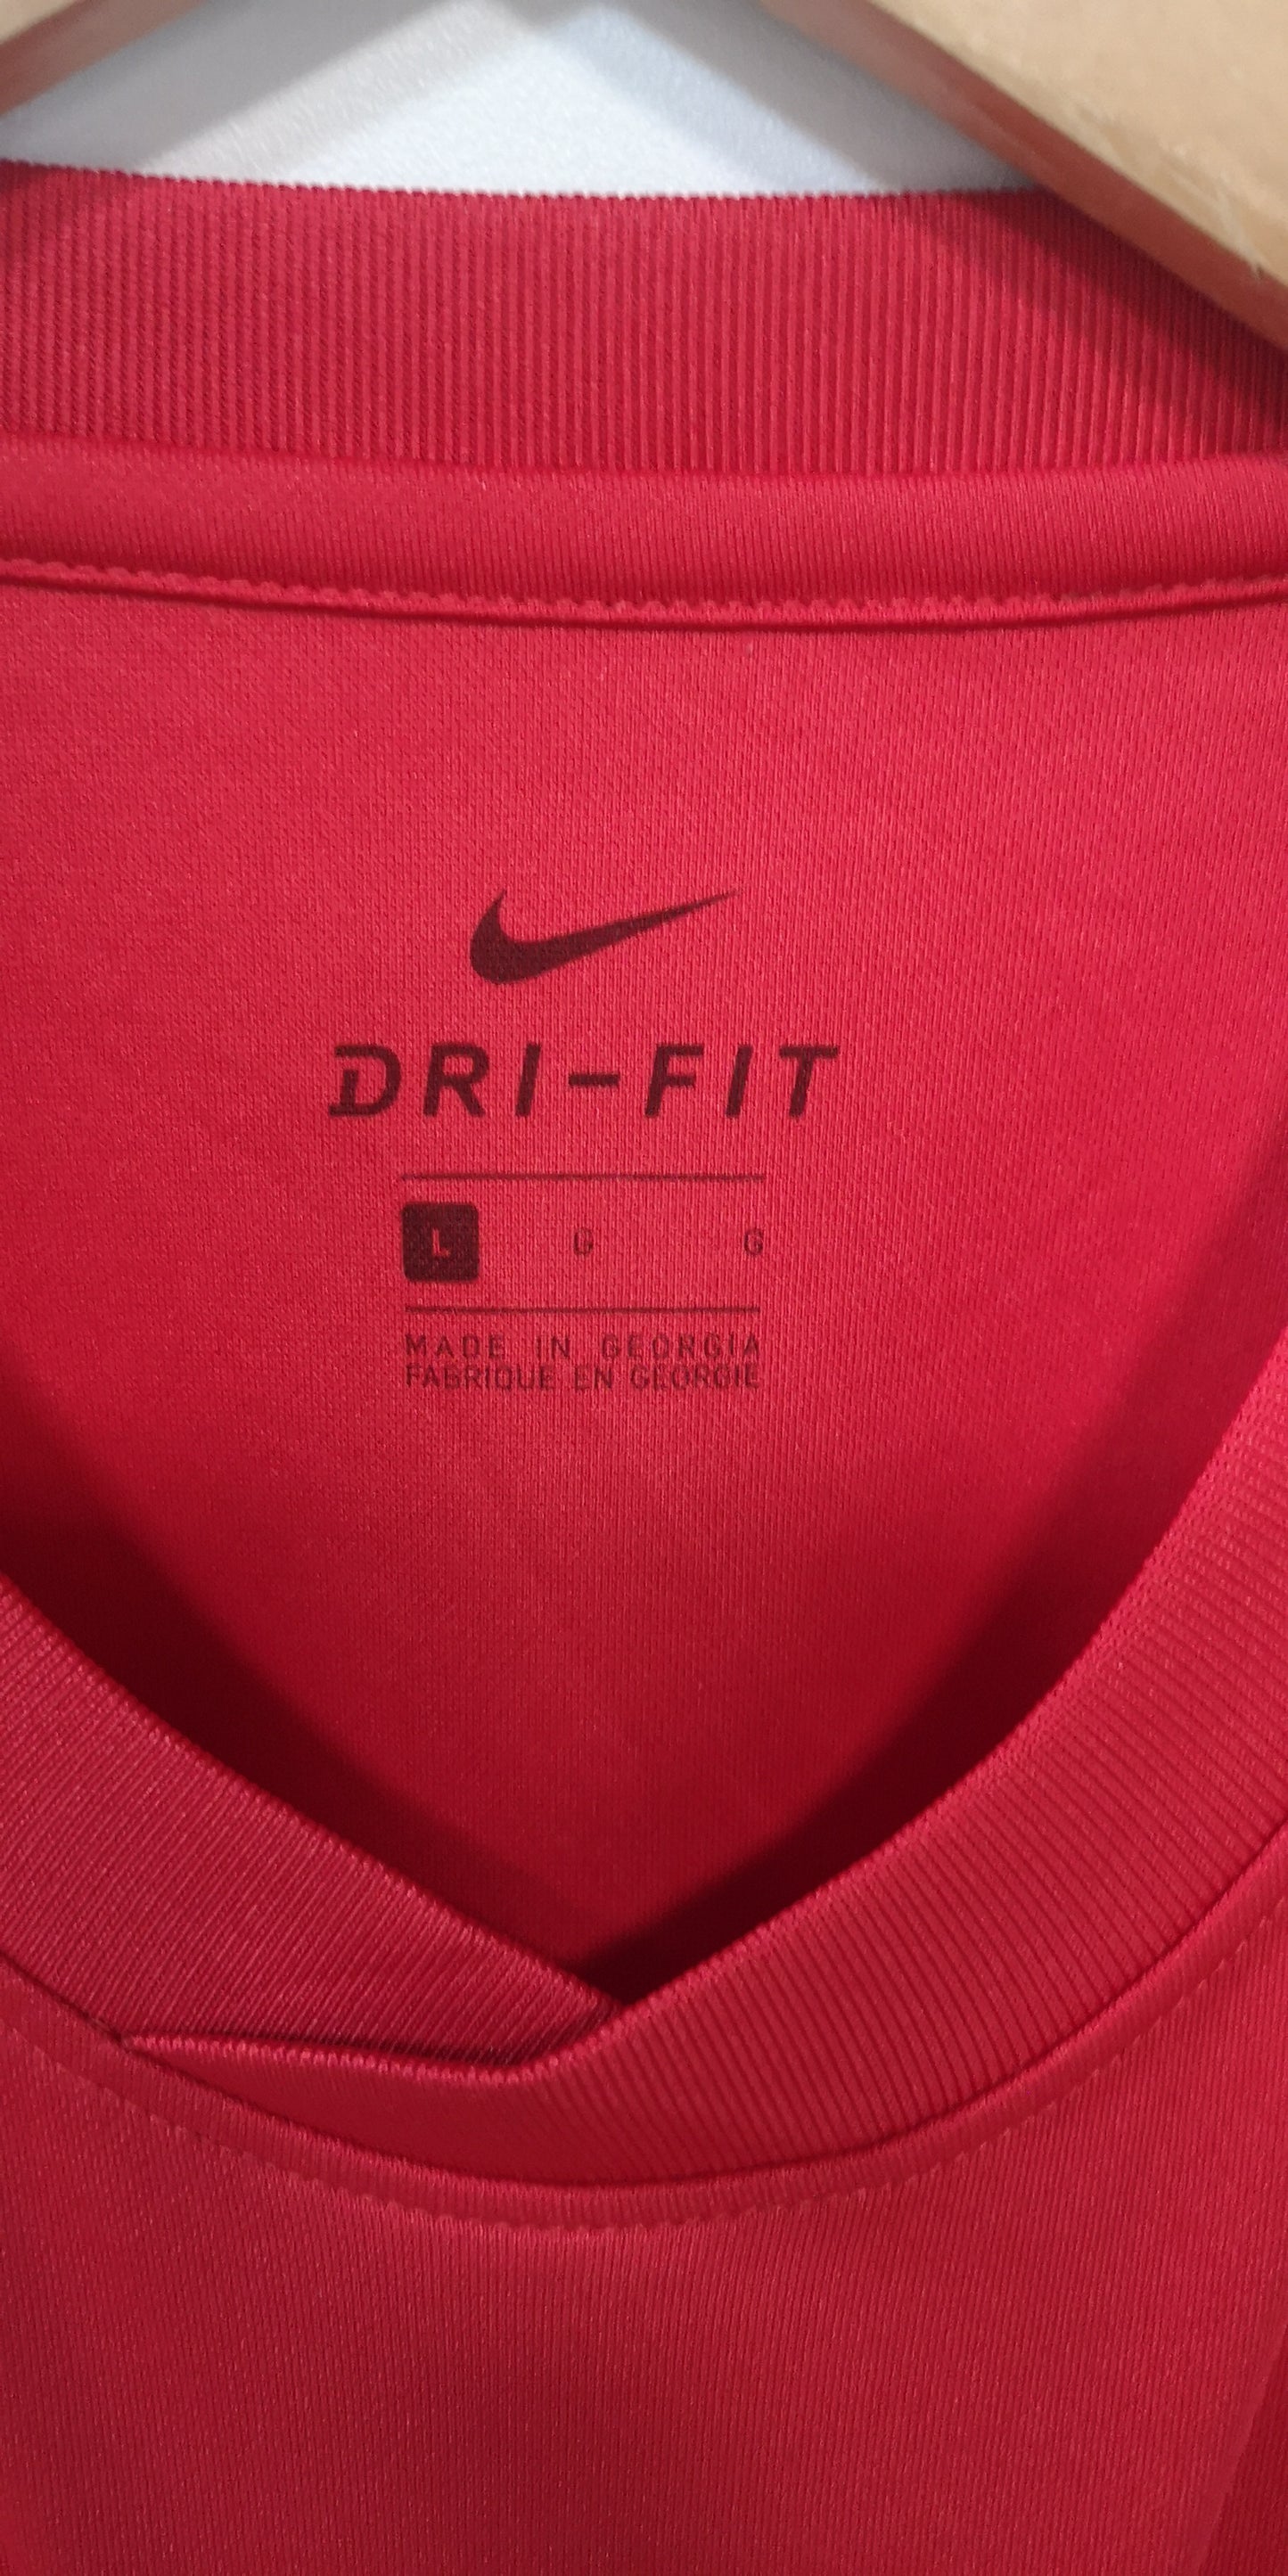 Nike Red Dri-Fit Top Size L